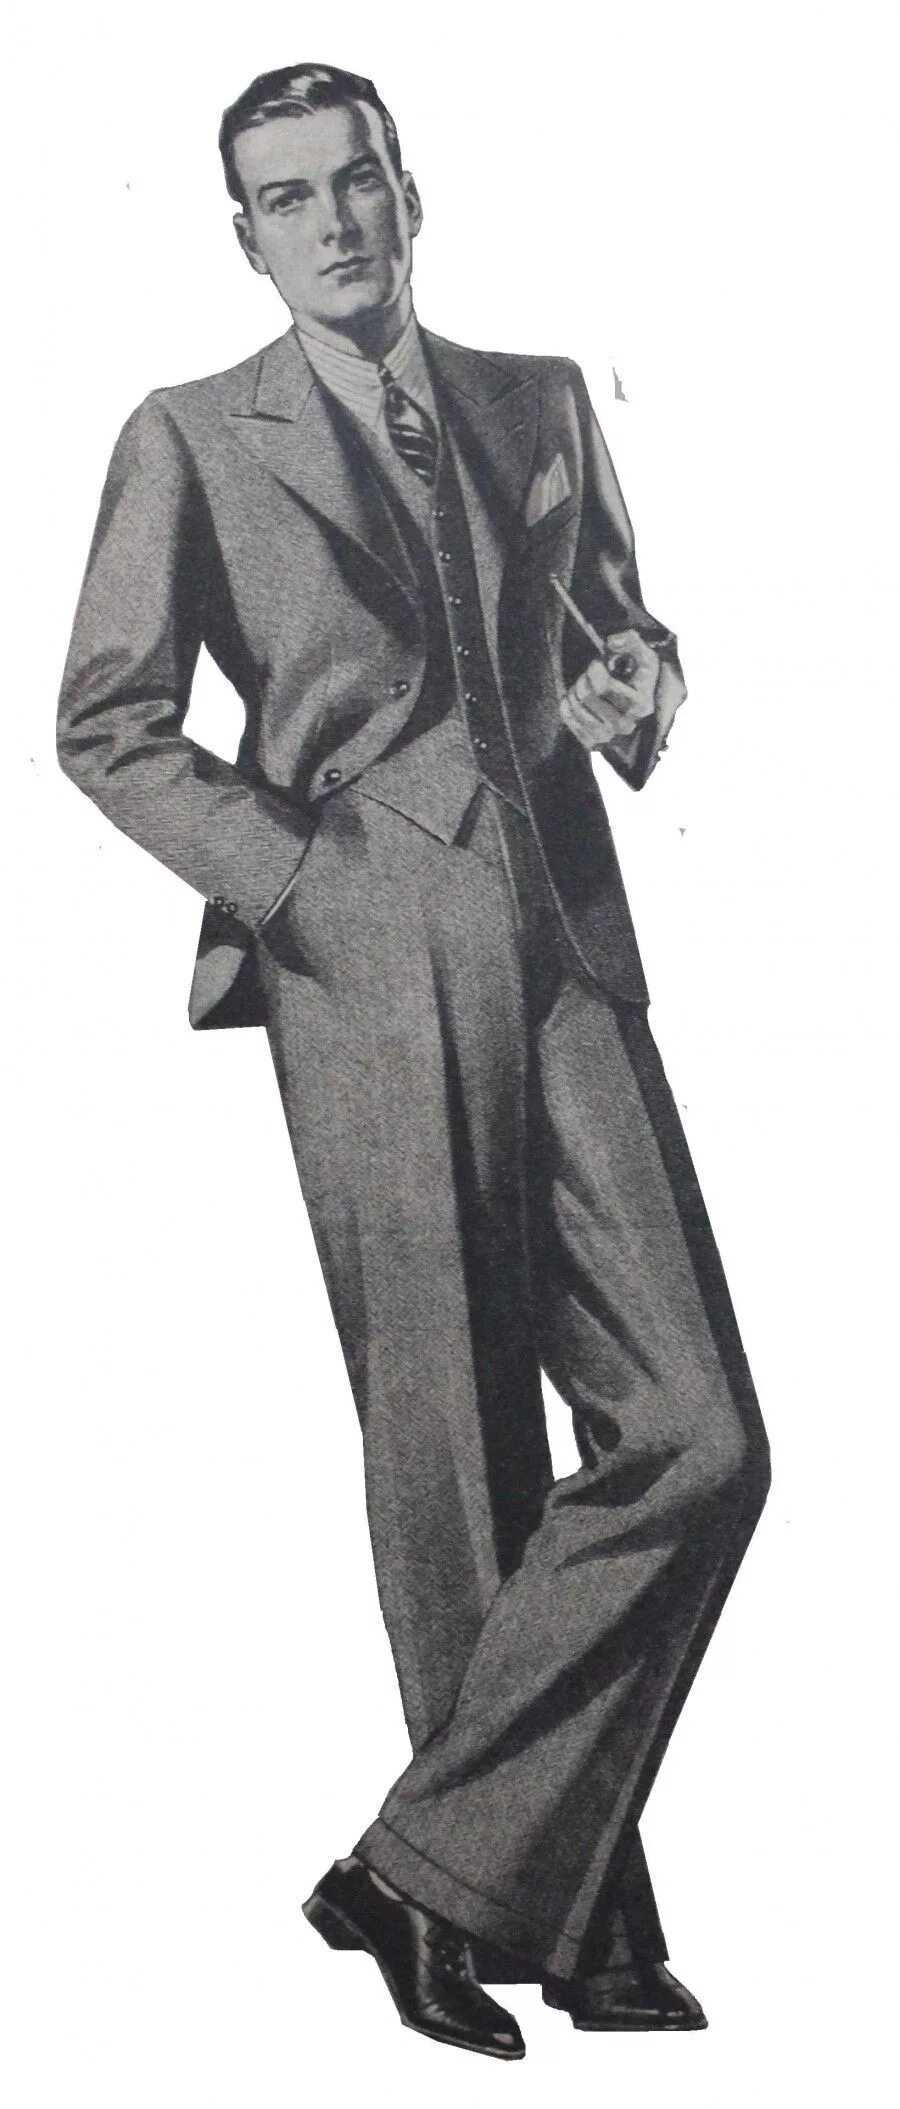 50 е мужчины. Костюм Зут 1940. Стиль "Зут" (Zoot Suit). Мода 1940 Америка мужчины. Костюмы 50-х годов мужские.